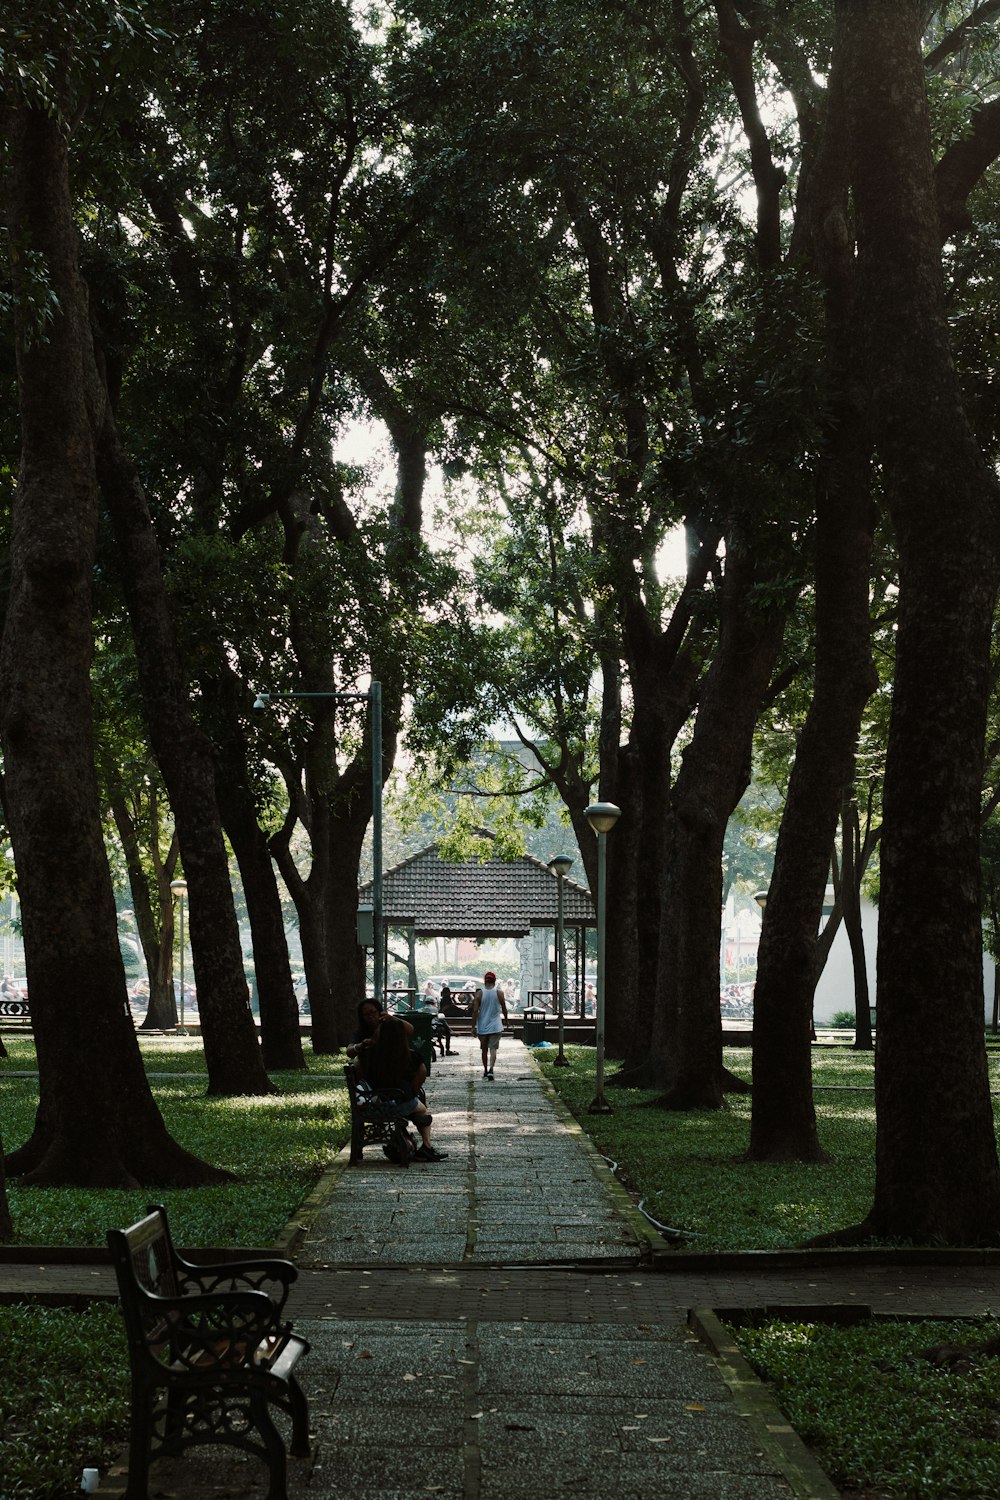 Un parque con bancos, árboles y gente caminando